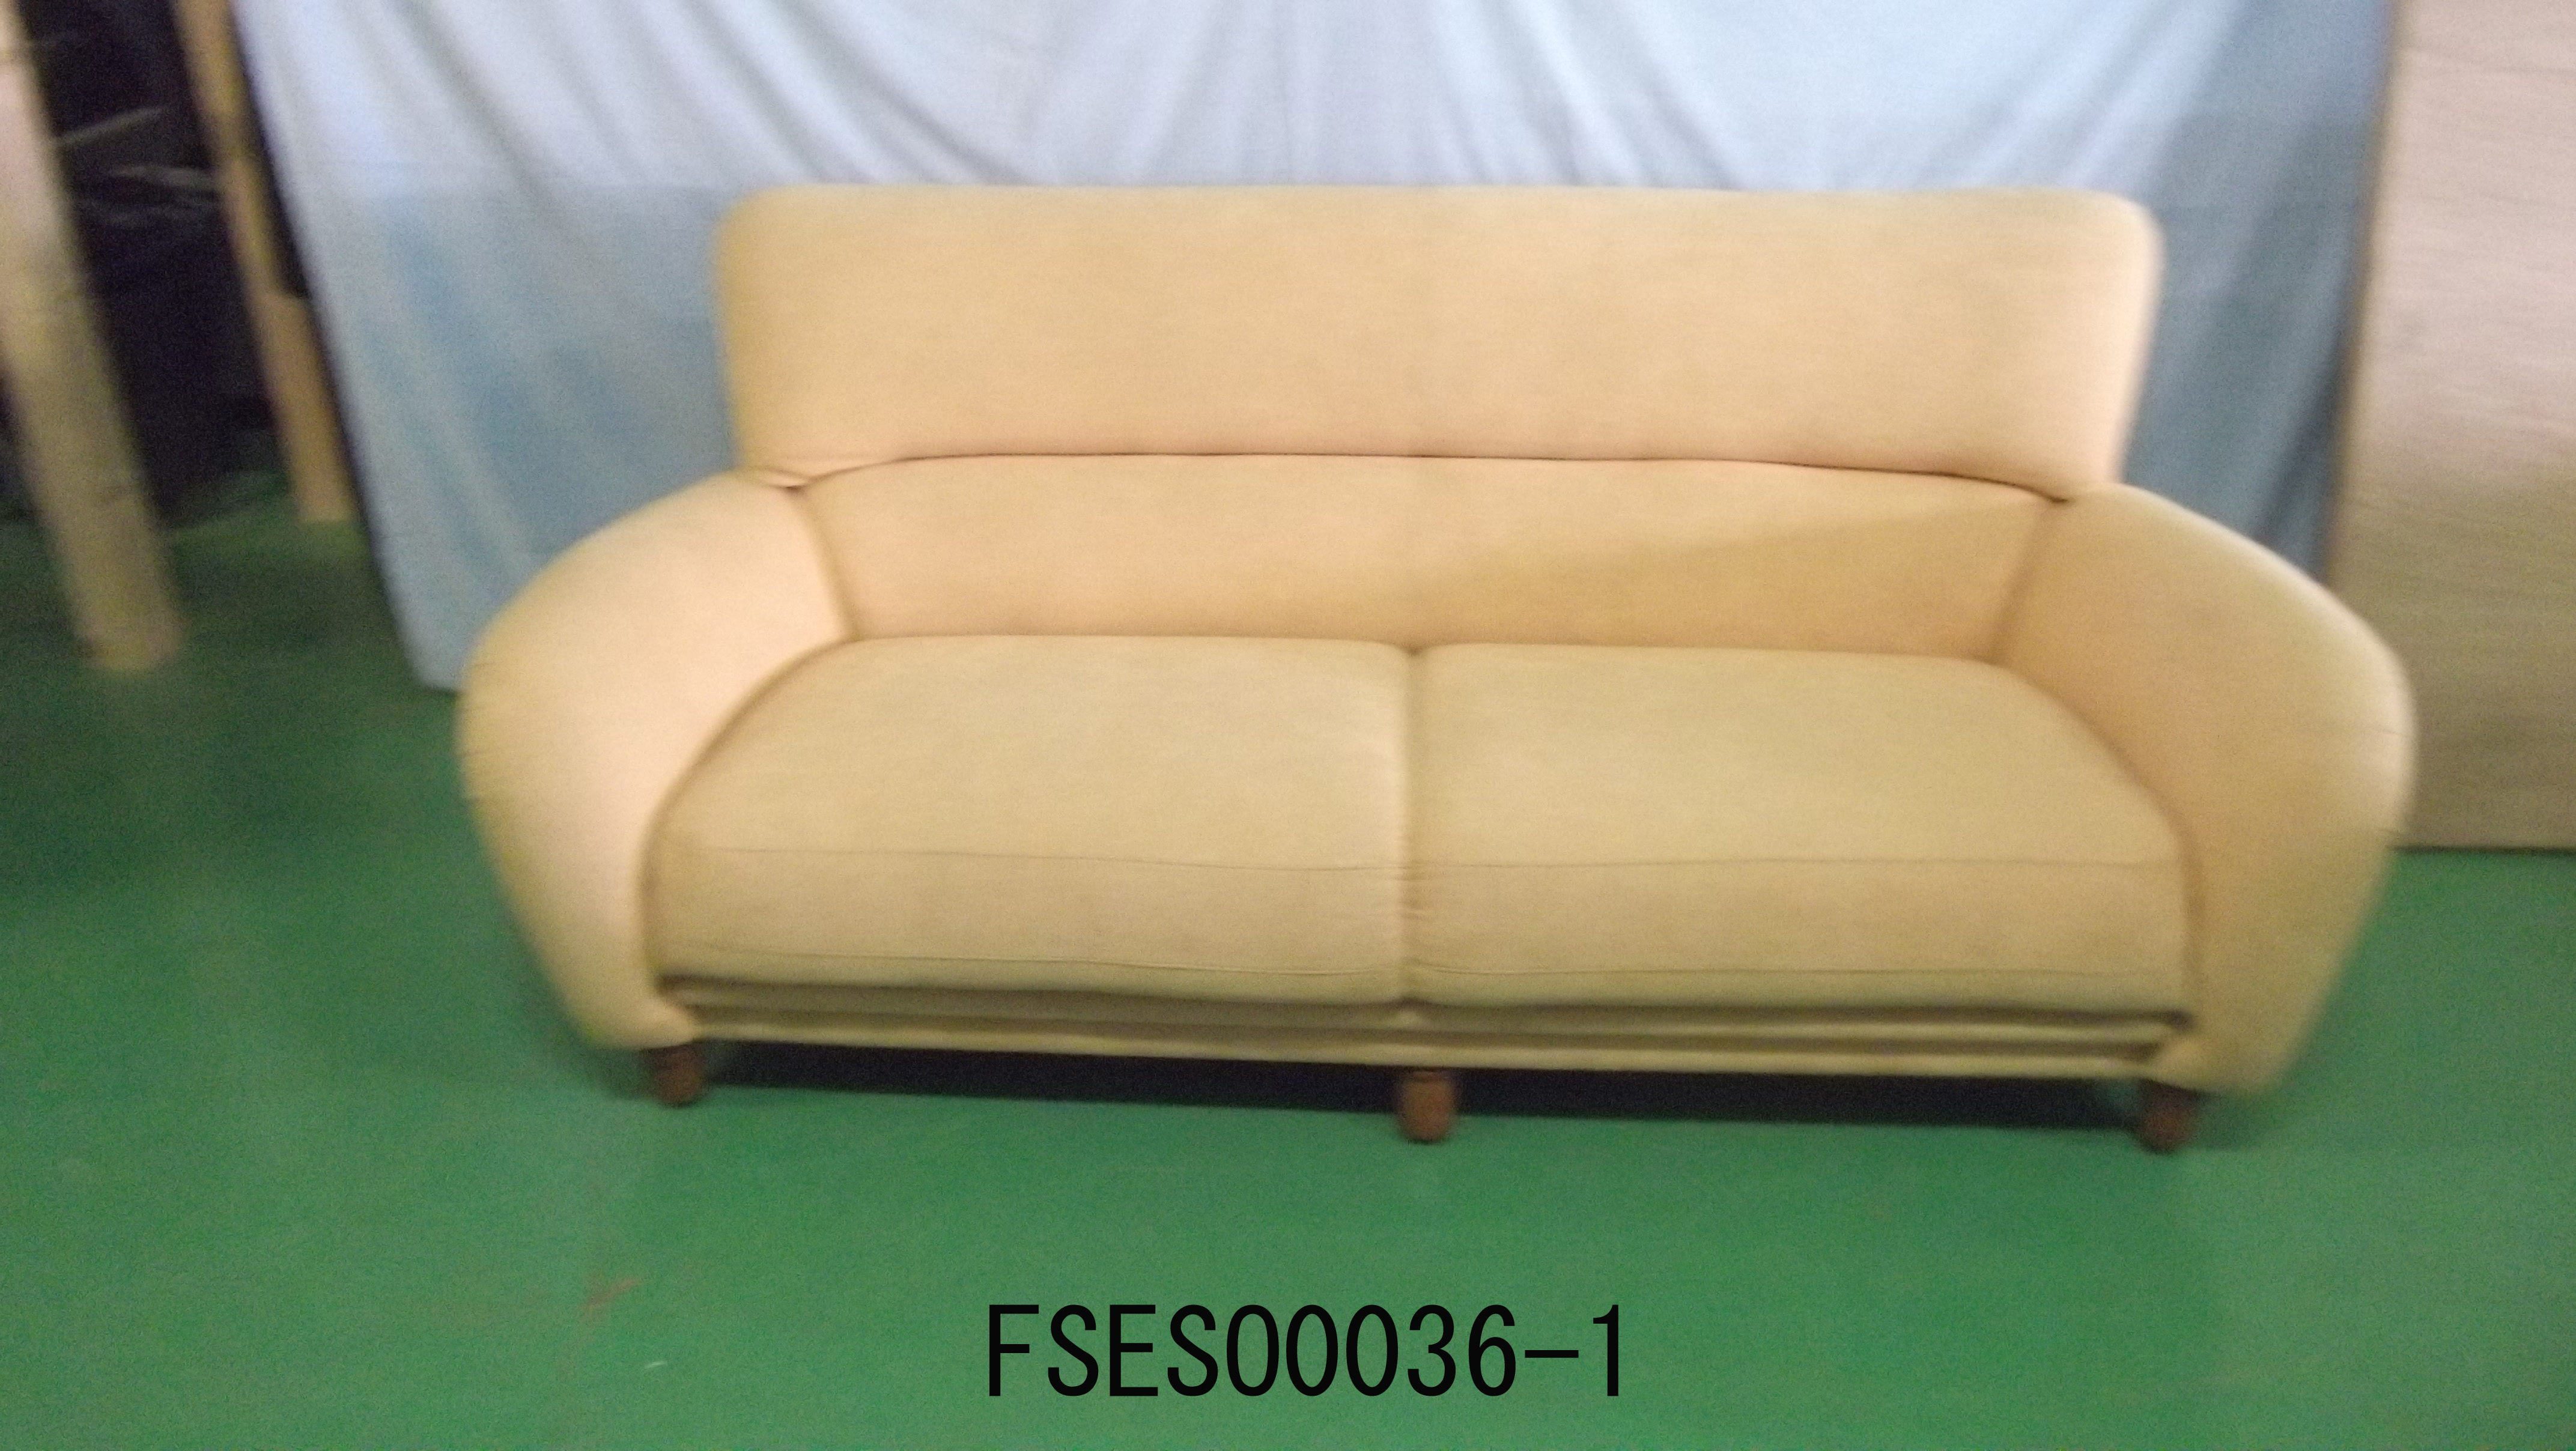 FSESO0036-1